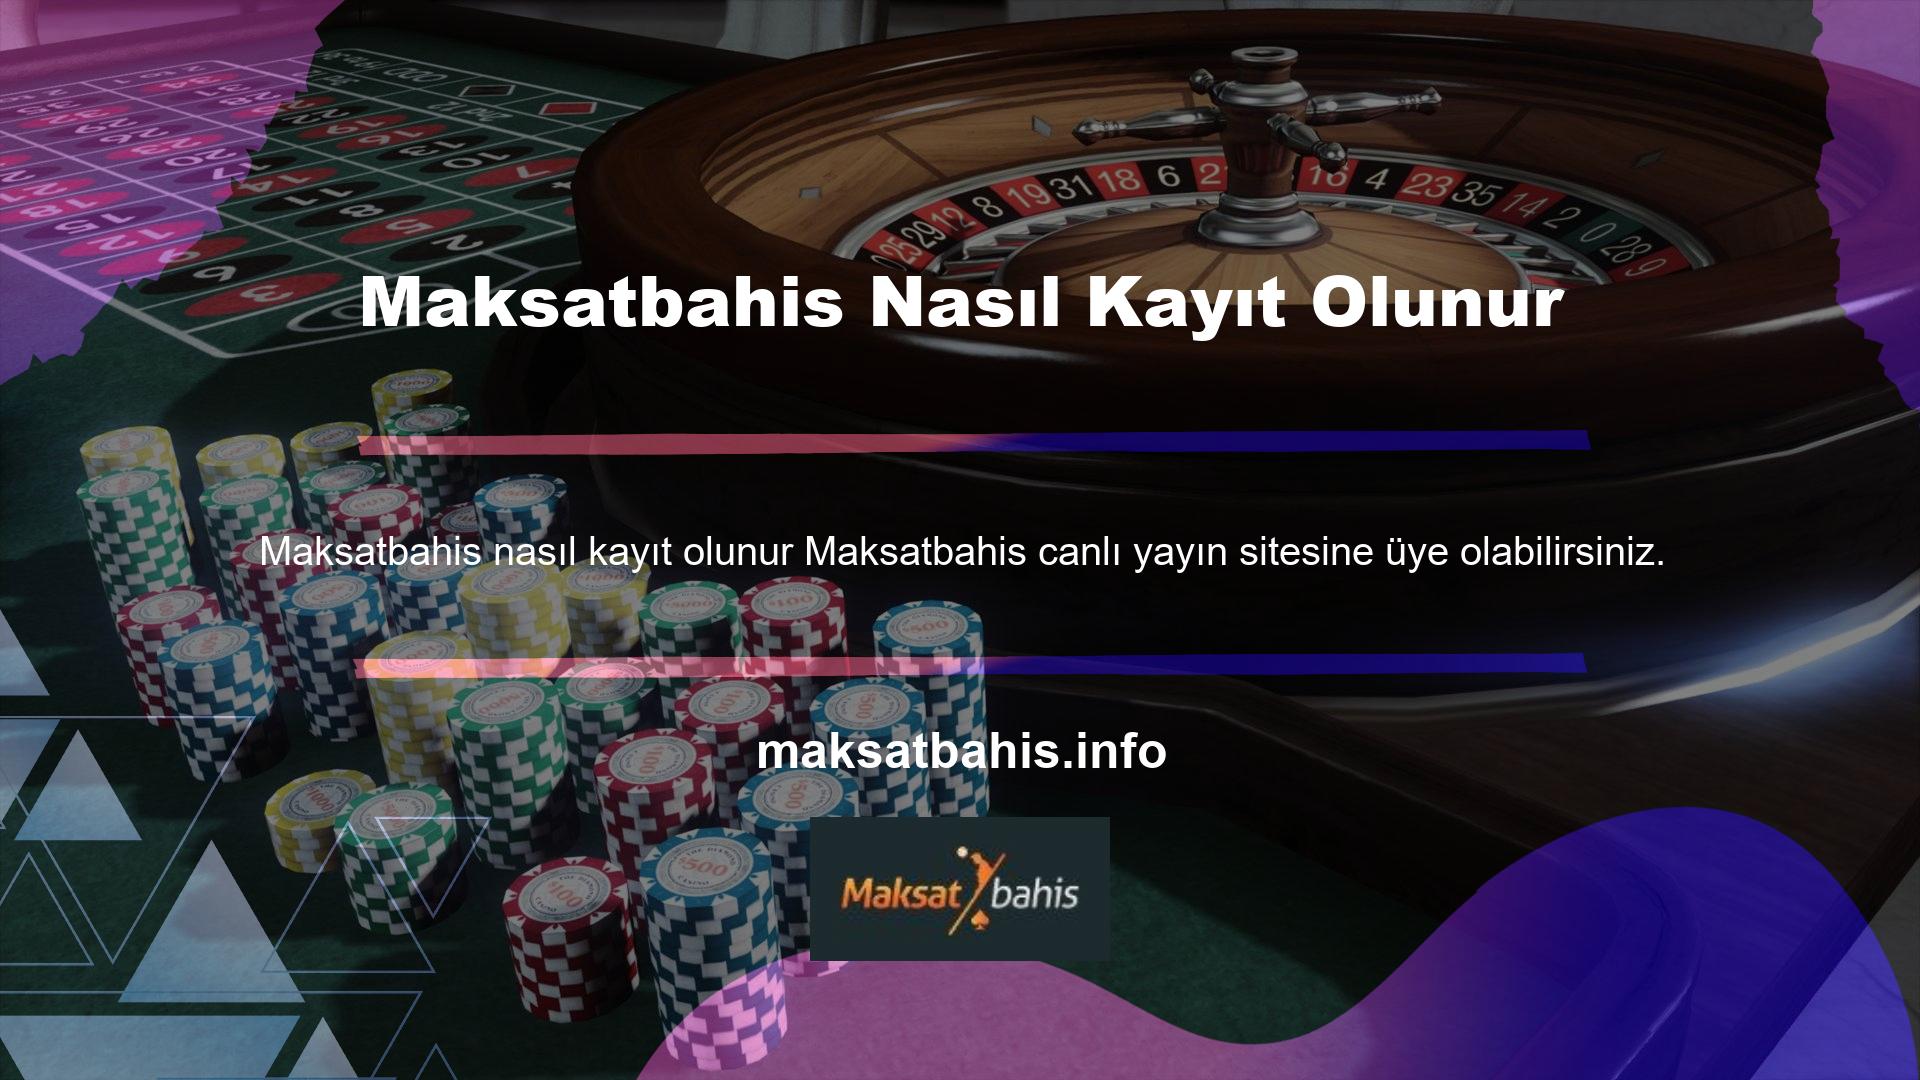 18 yaşını doldurmuş olan herkes Maksatbahis online casino ve bahis sitesine üye olabilir